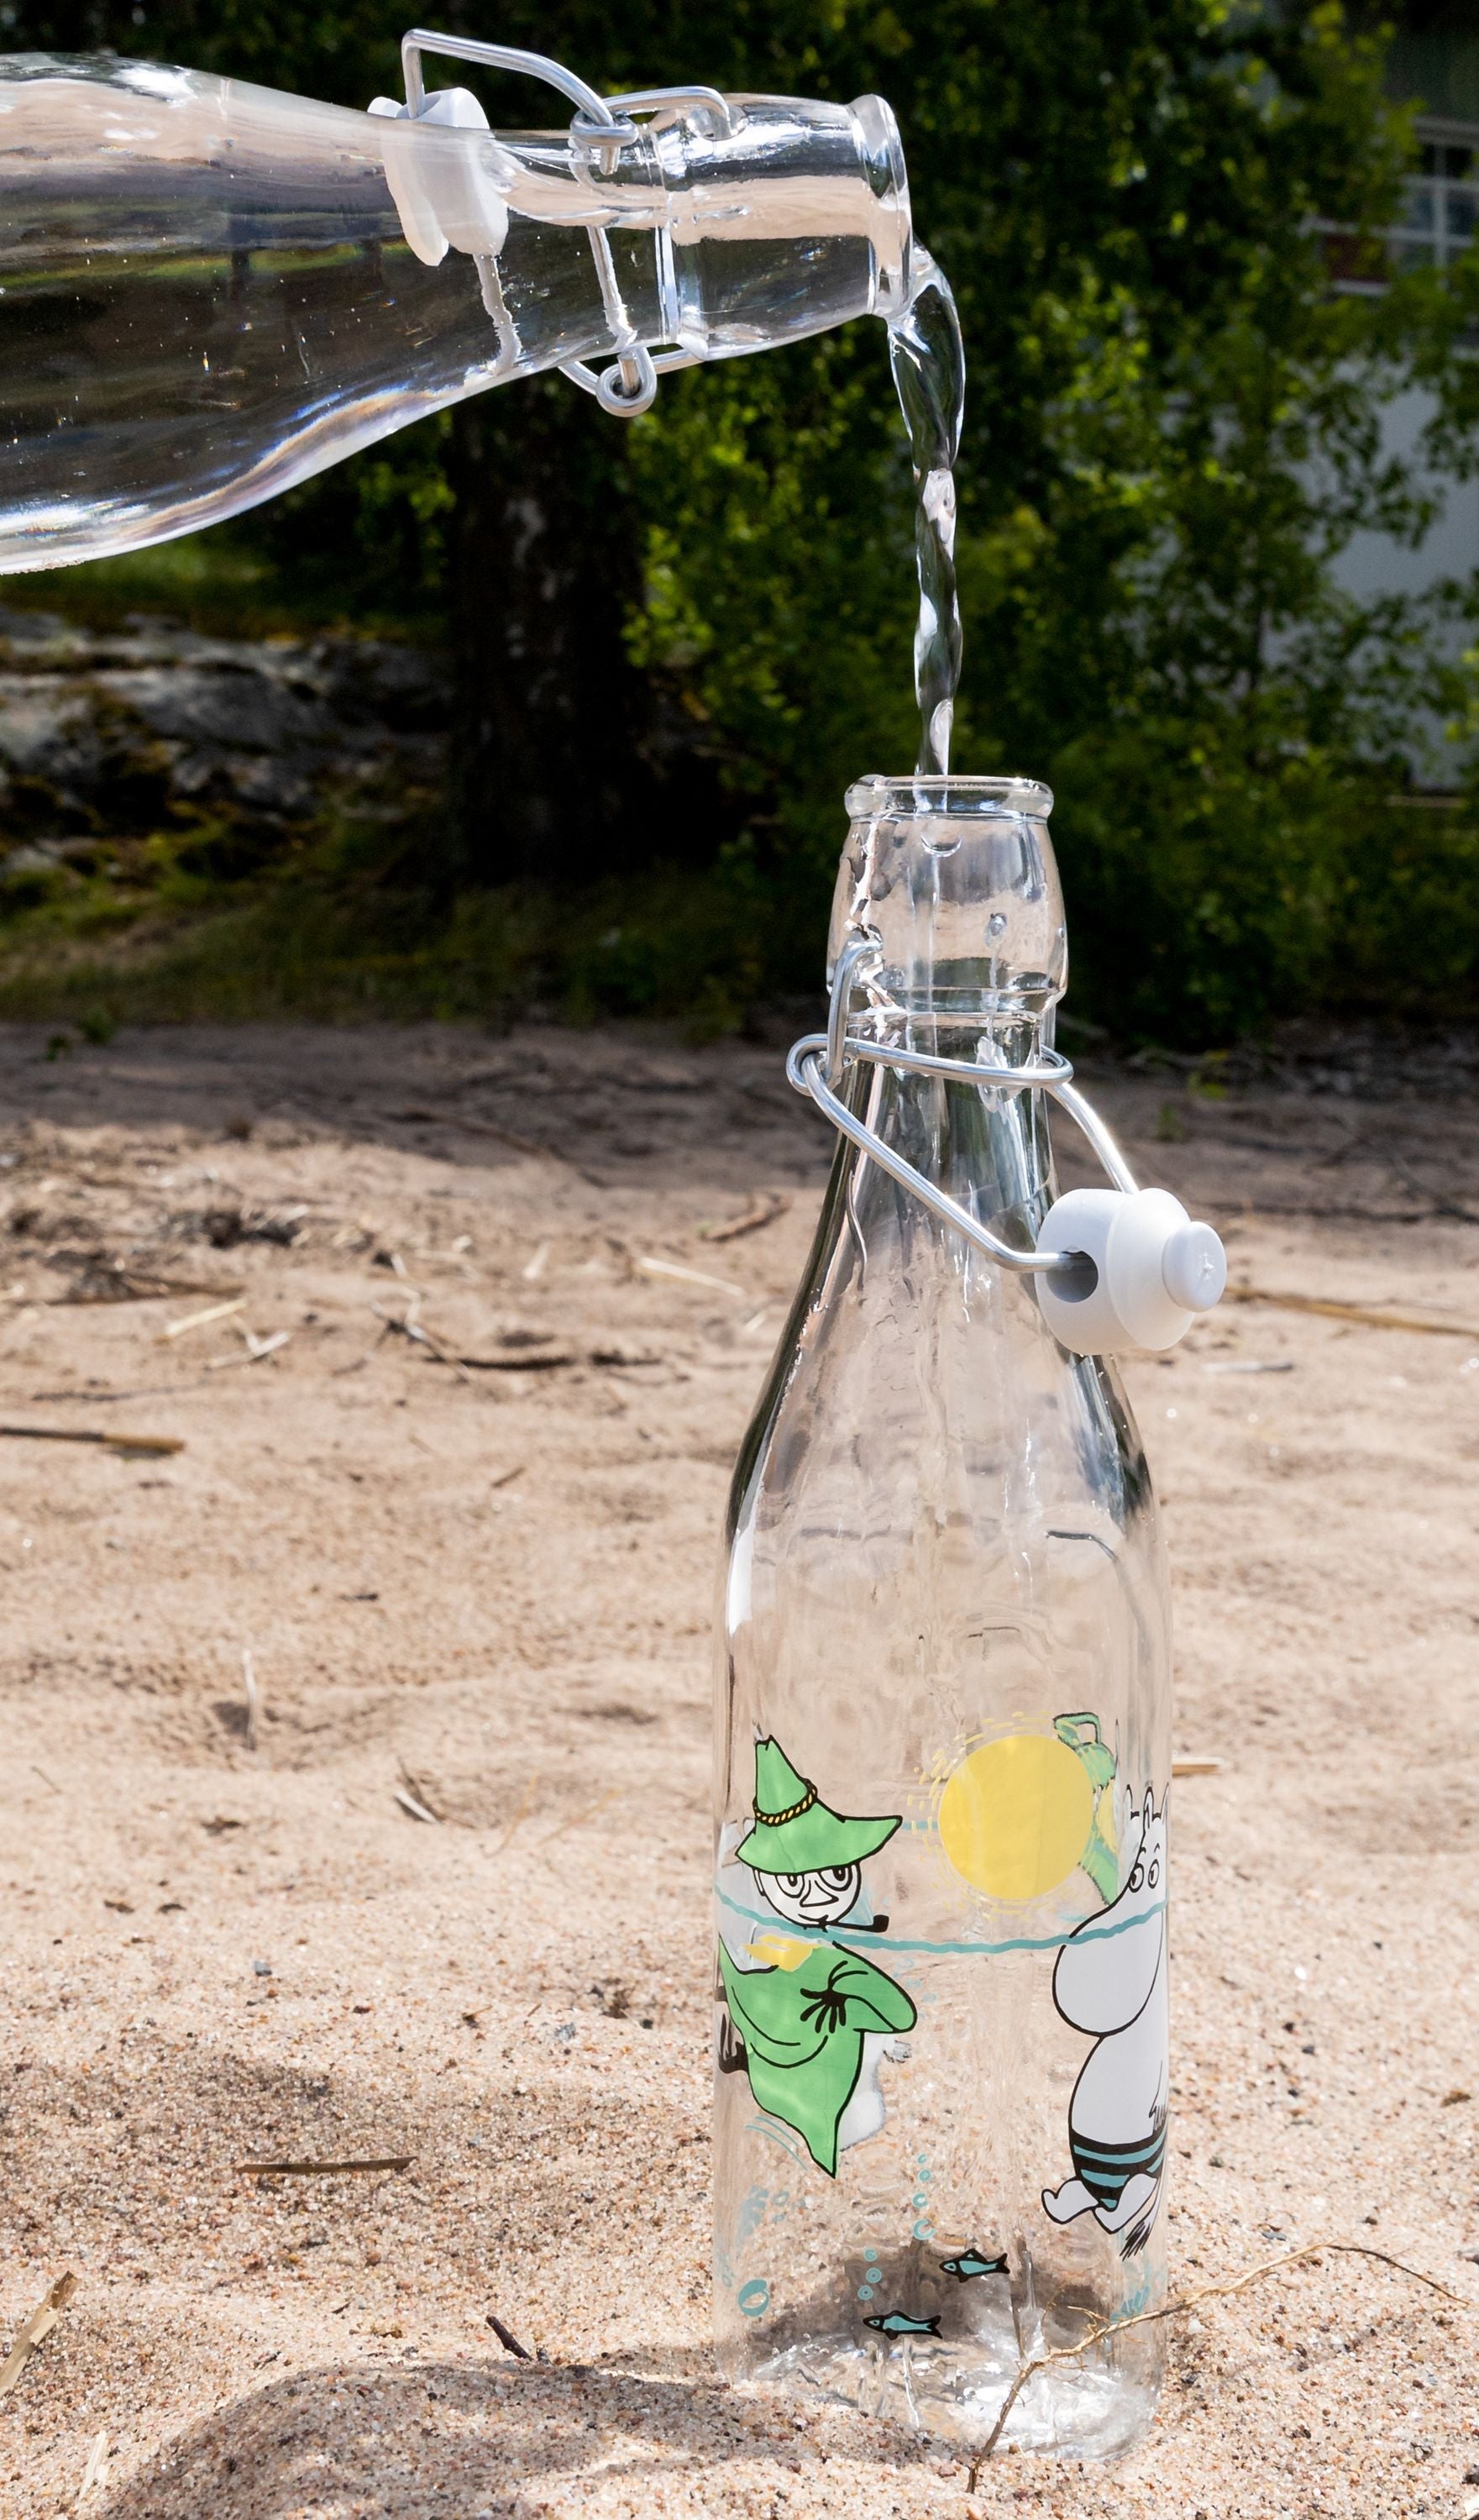 Muurla Moomin glazen fles, plezier in het water